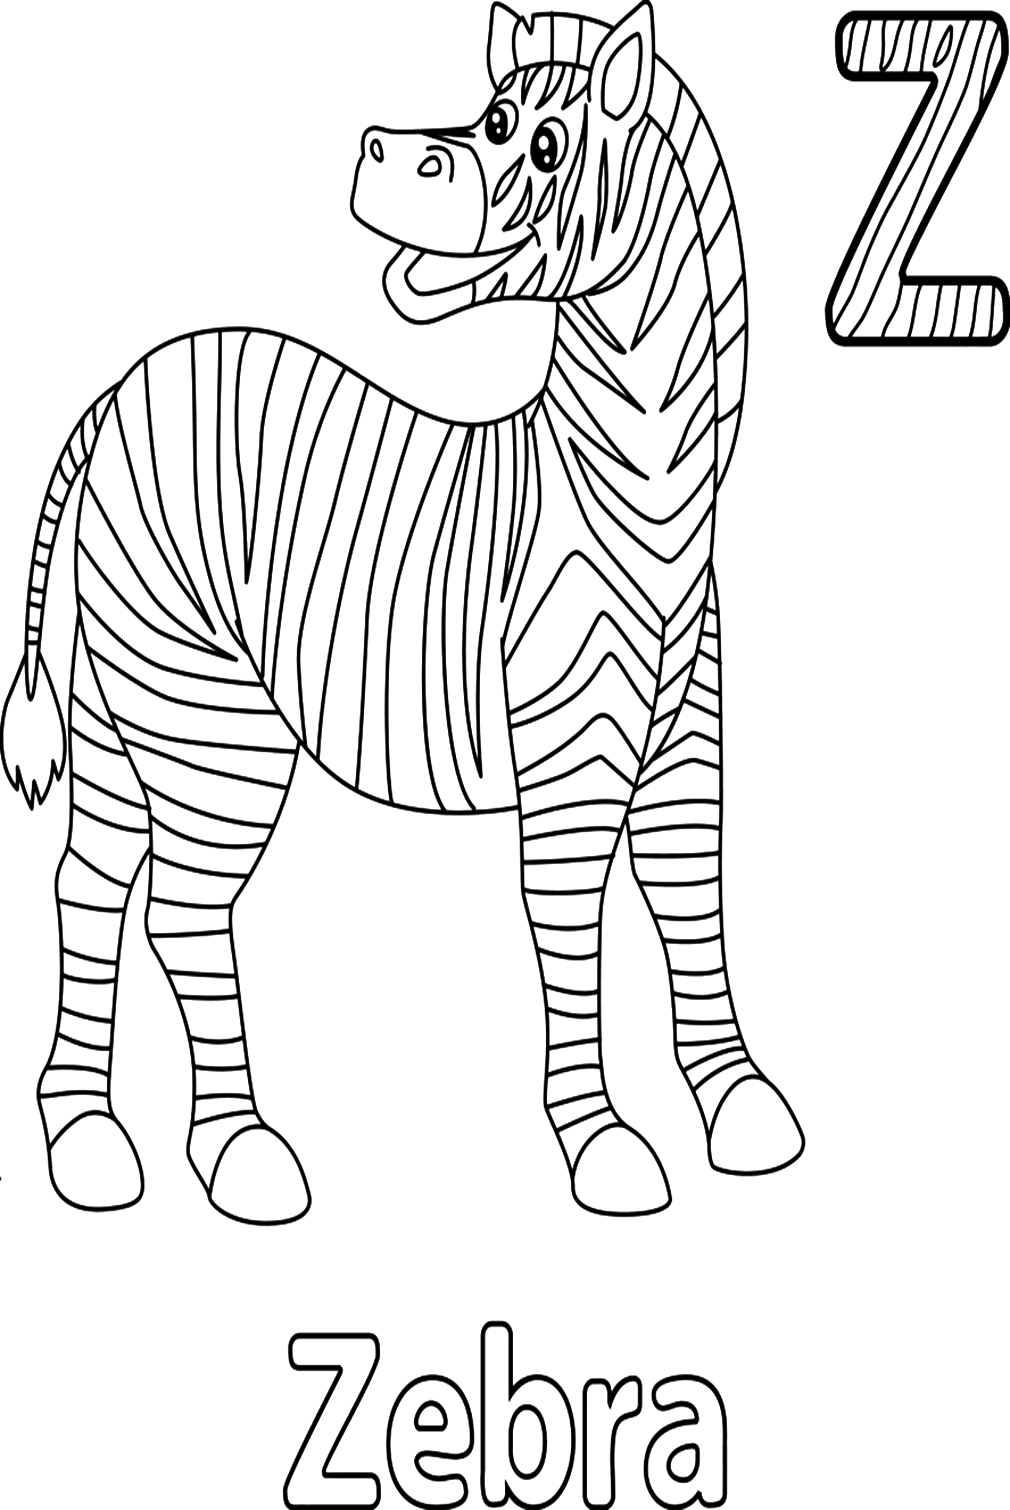 Buchstabe Z für Zebra-Malseite aus Buchstabe Z